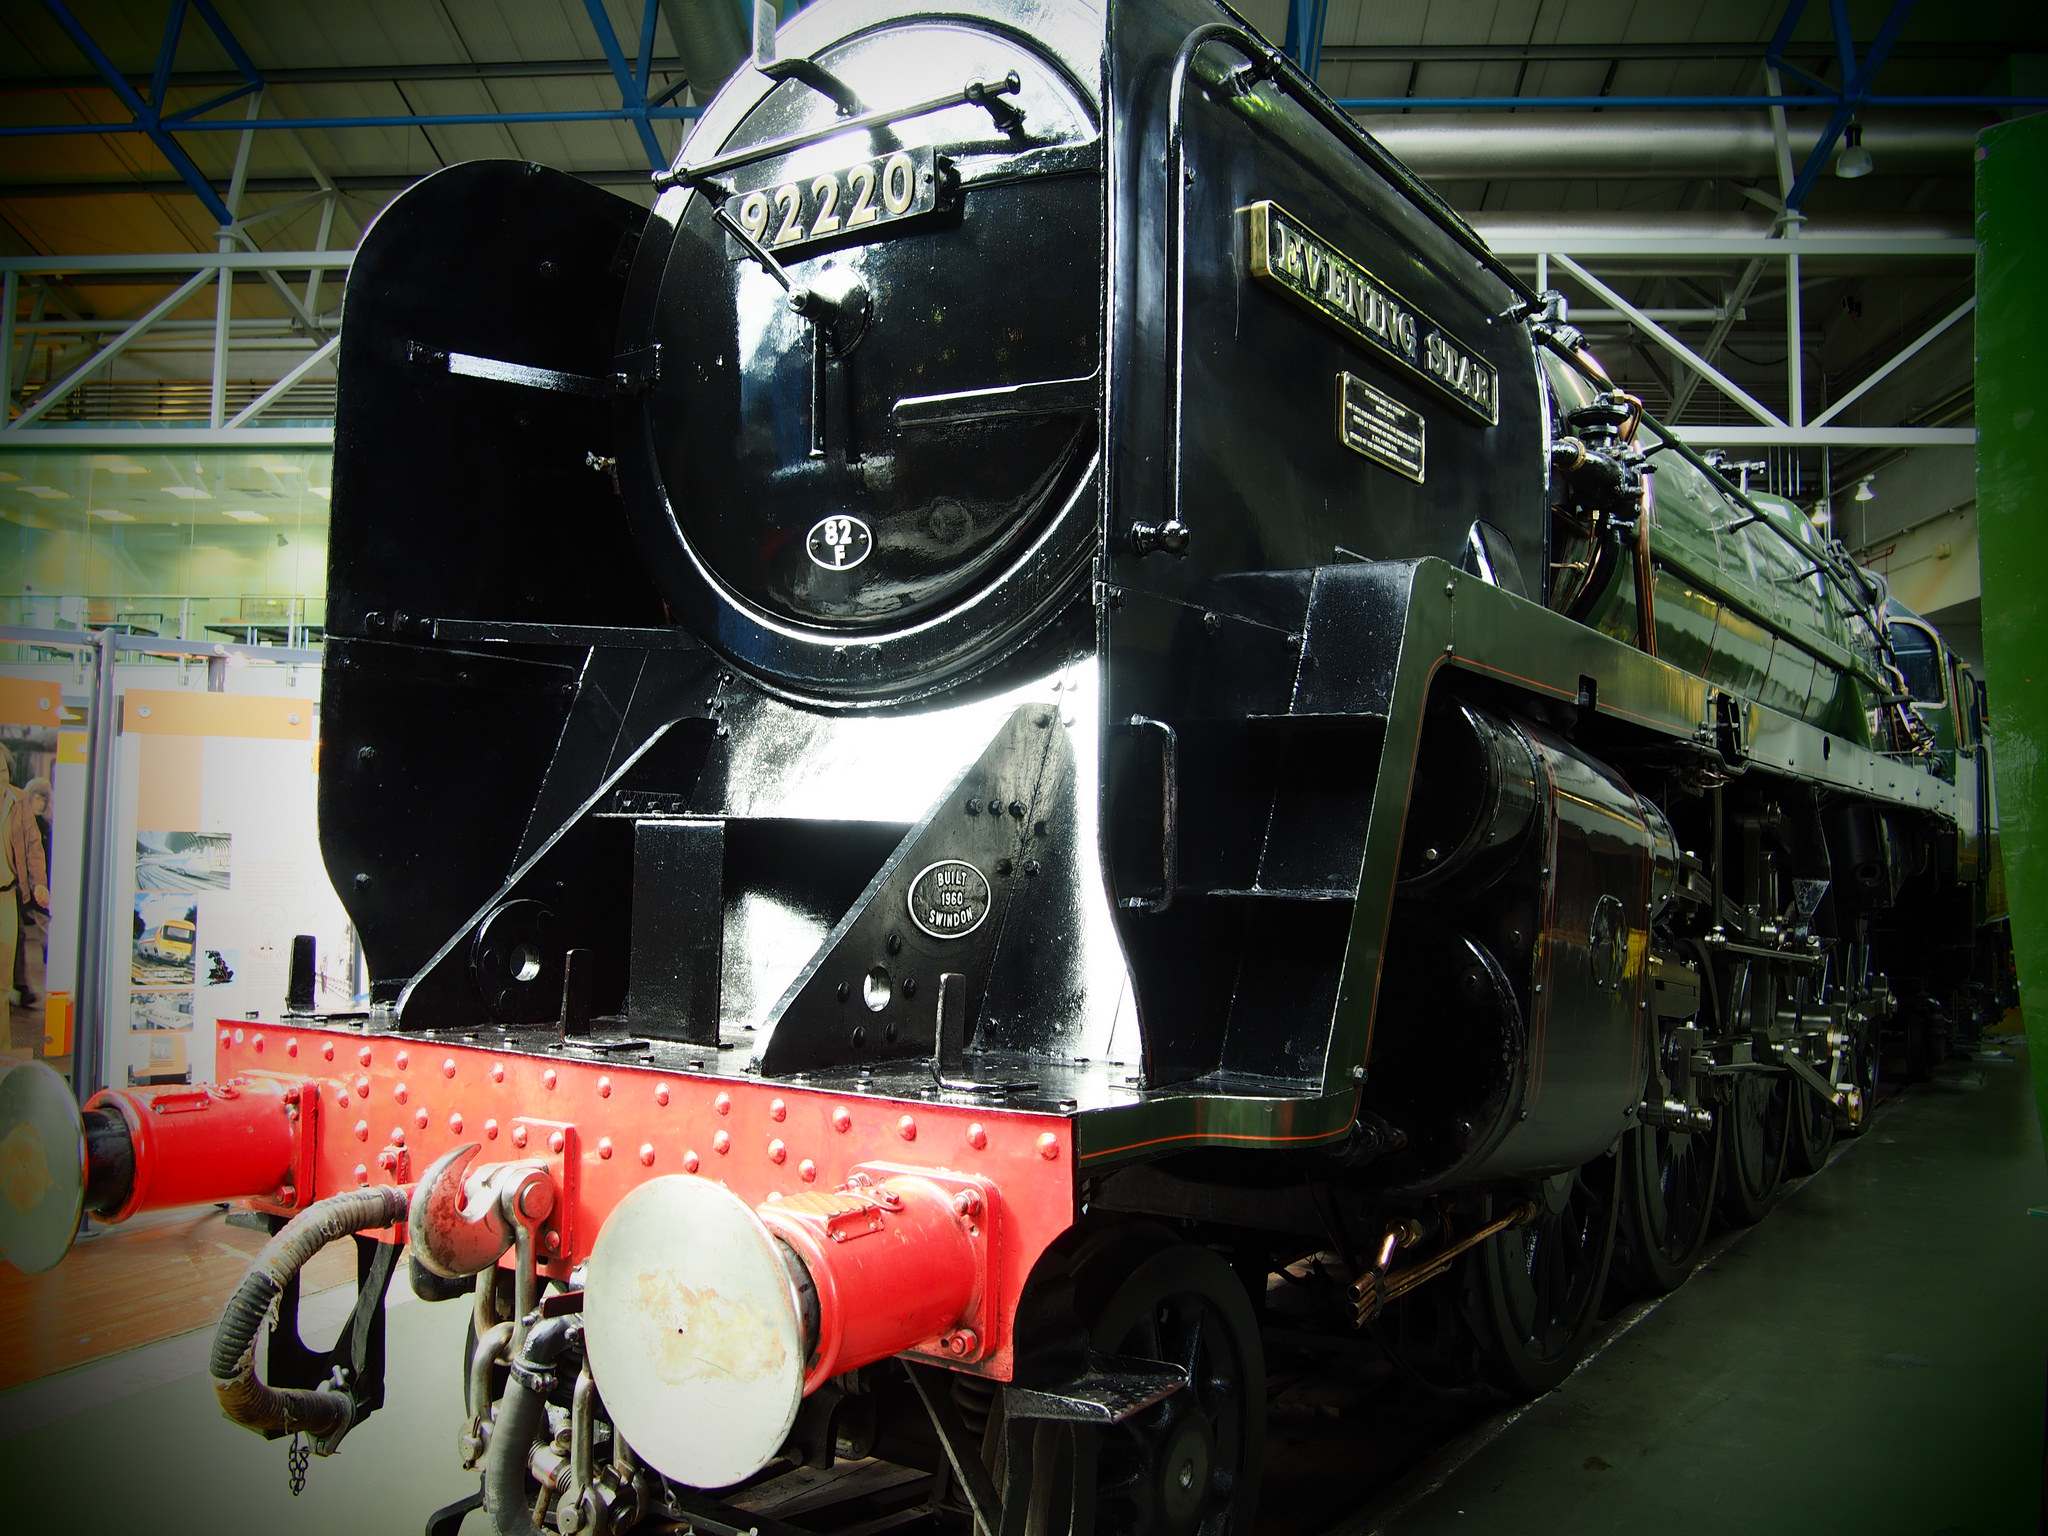 national railway museum National Railway Museum in York